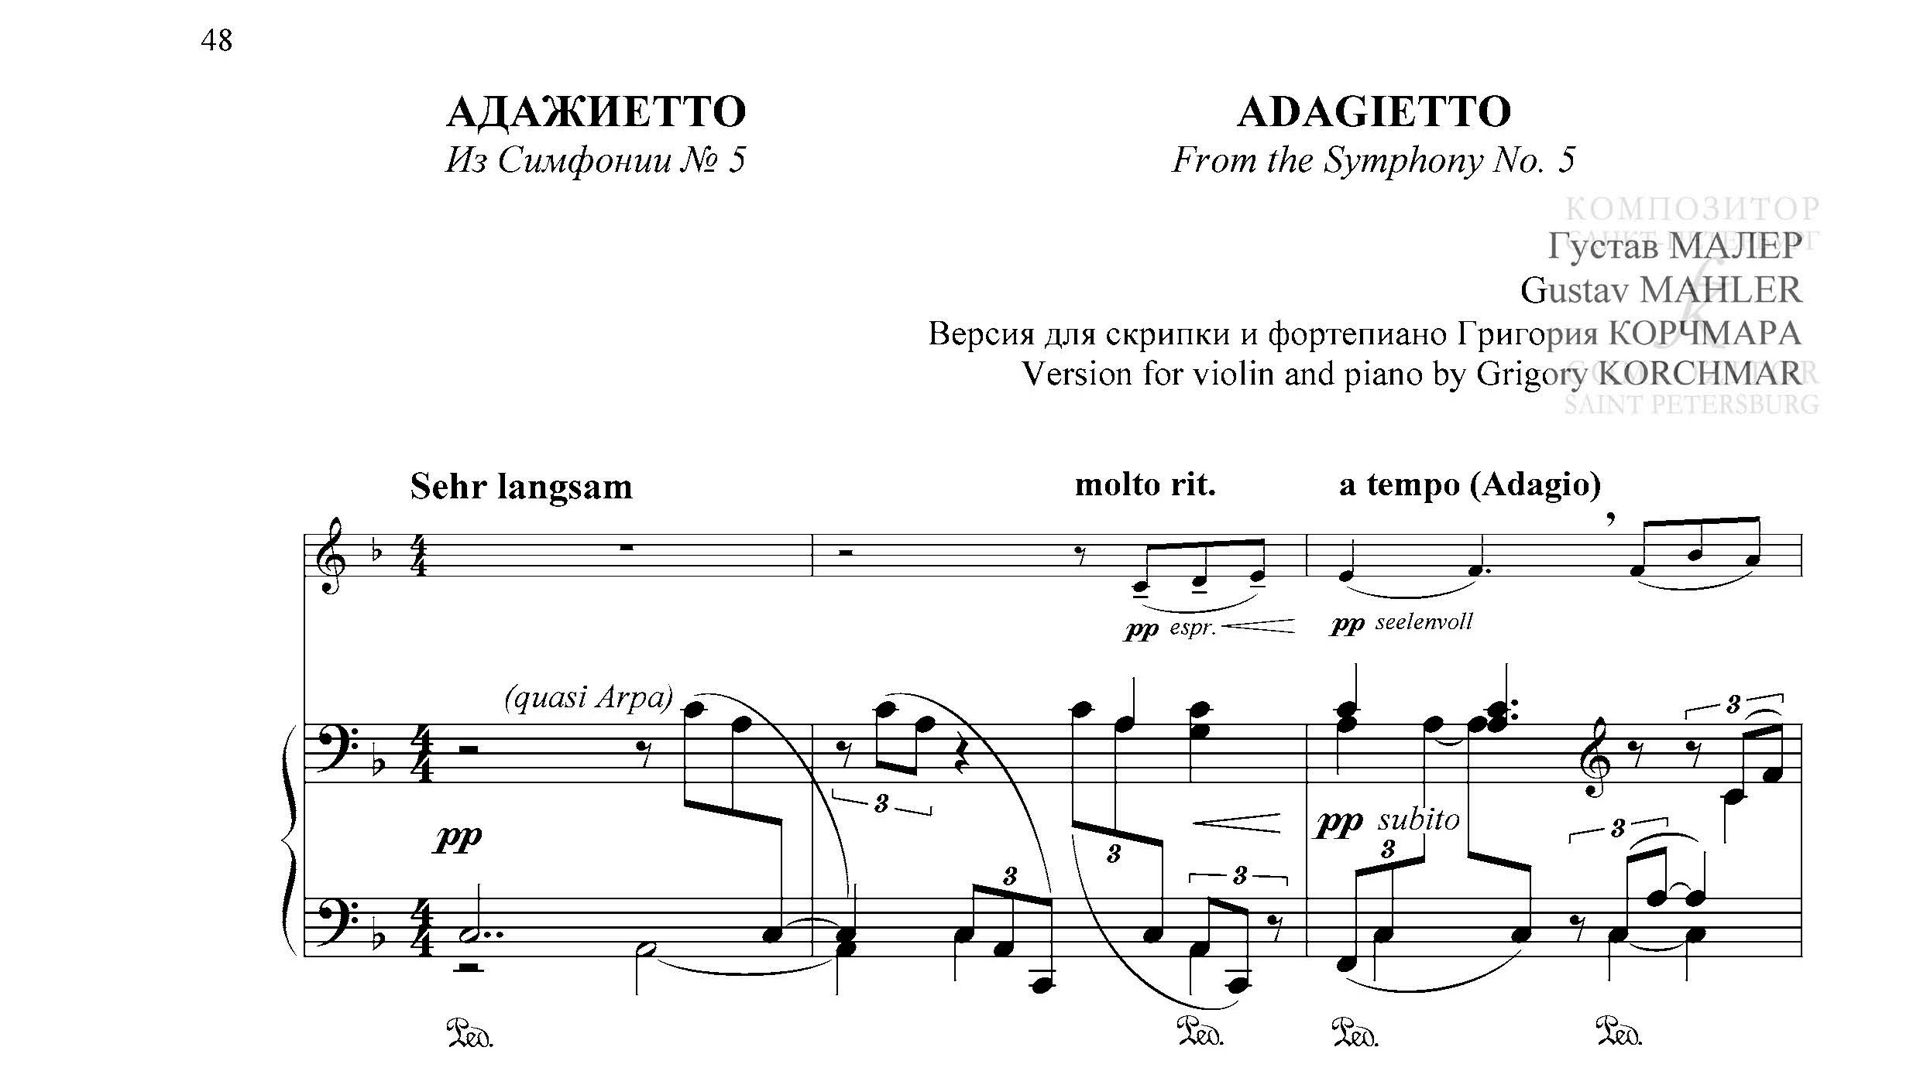 Адажиетто из Cимфонии № 5. С приложением партии скрипки